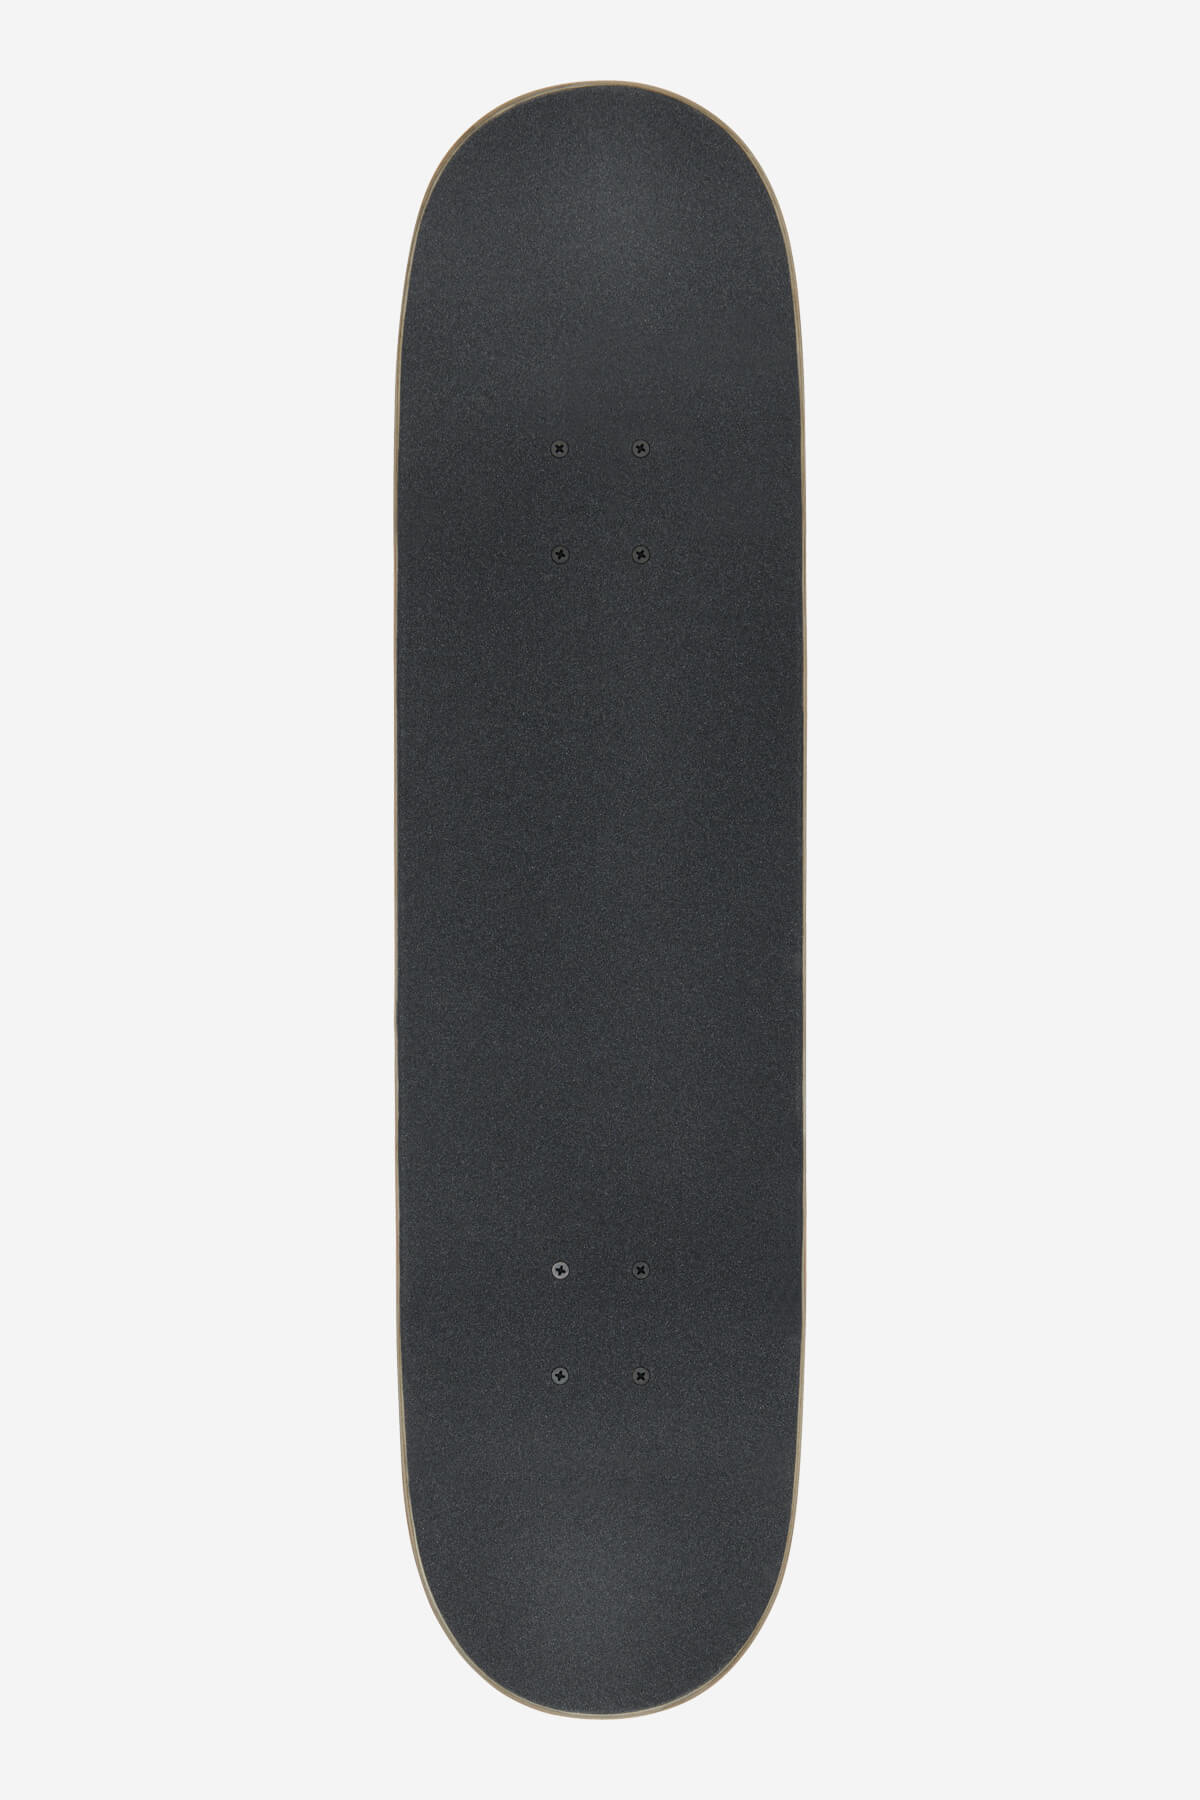 Globe - Goodstock - Gunmetal - 8.25" Komplett Skateboard